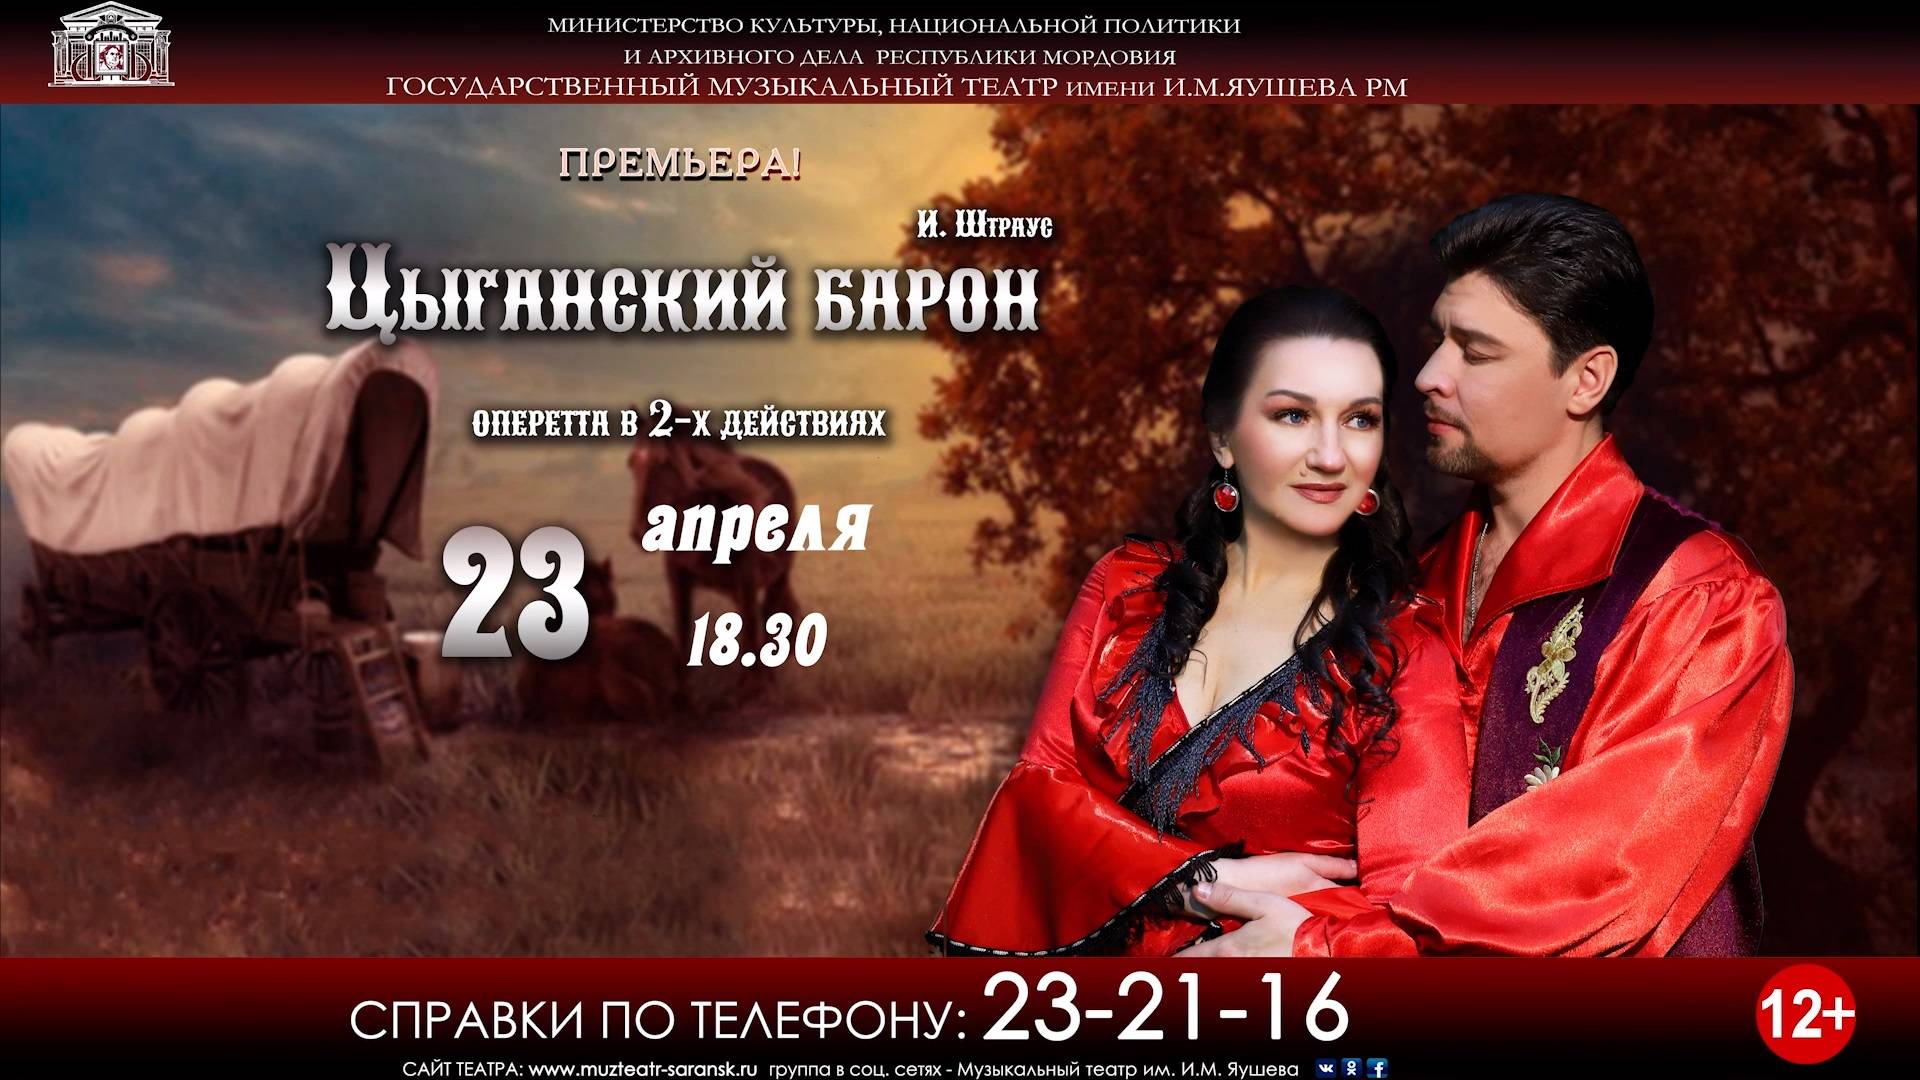 Государственный музыкальный театр имени И.М. Яушева приглашает зрителей на премьеру оперетты И. Штрауса «Цыганский барон» в 2-х актах